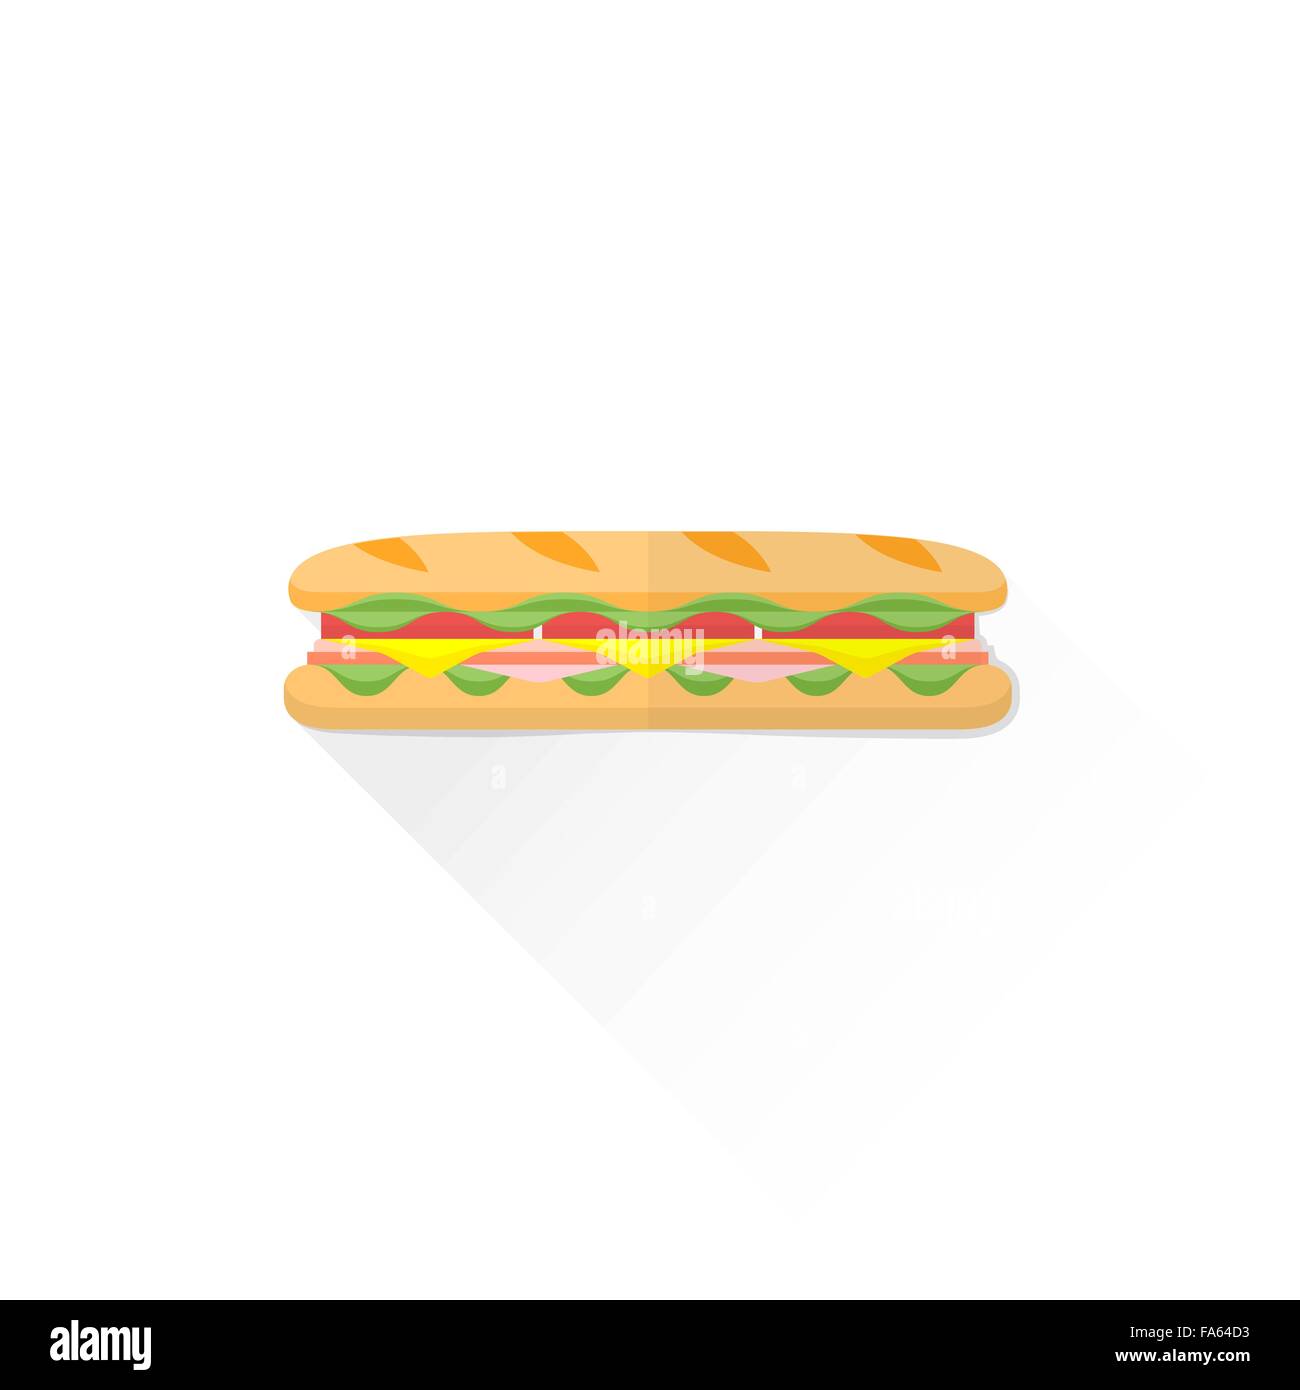 Fast food sandwich baguette vecteur bacon jambon fromage tomate salade plate illustration isolé sur fond blanc avec sh Illustration de Vecteur